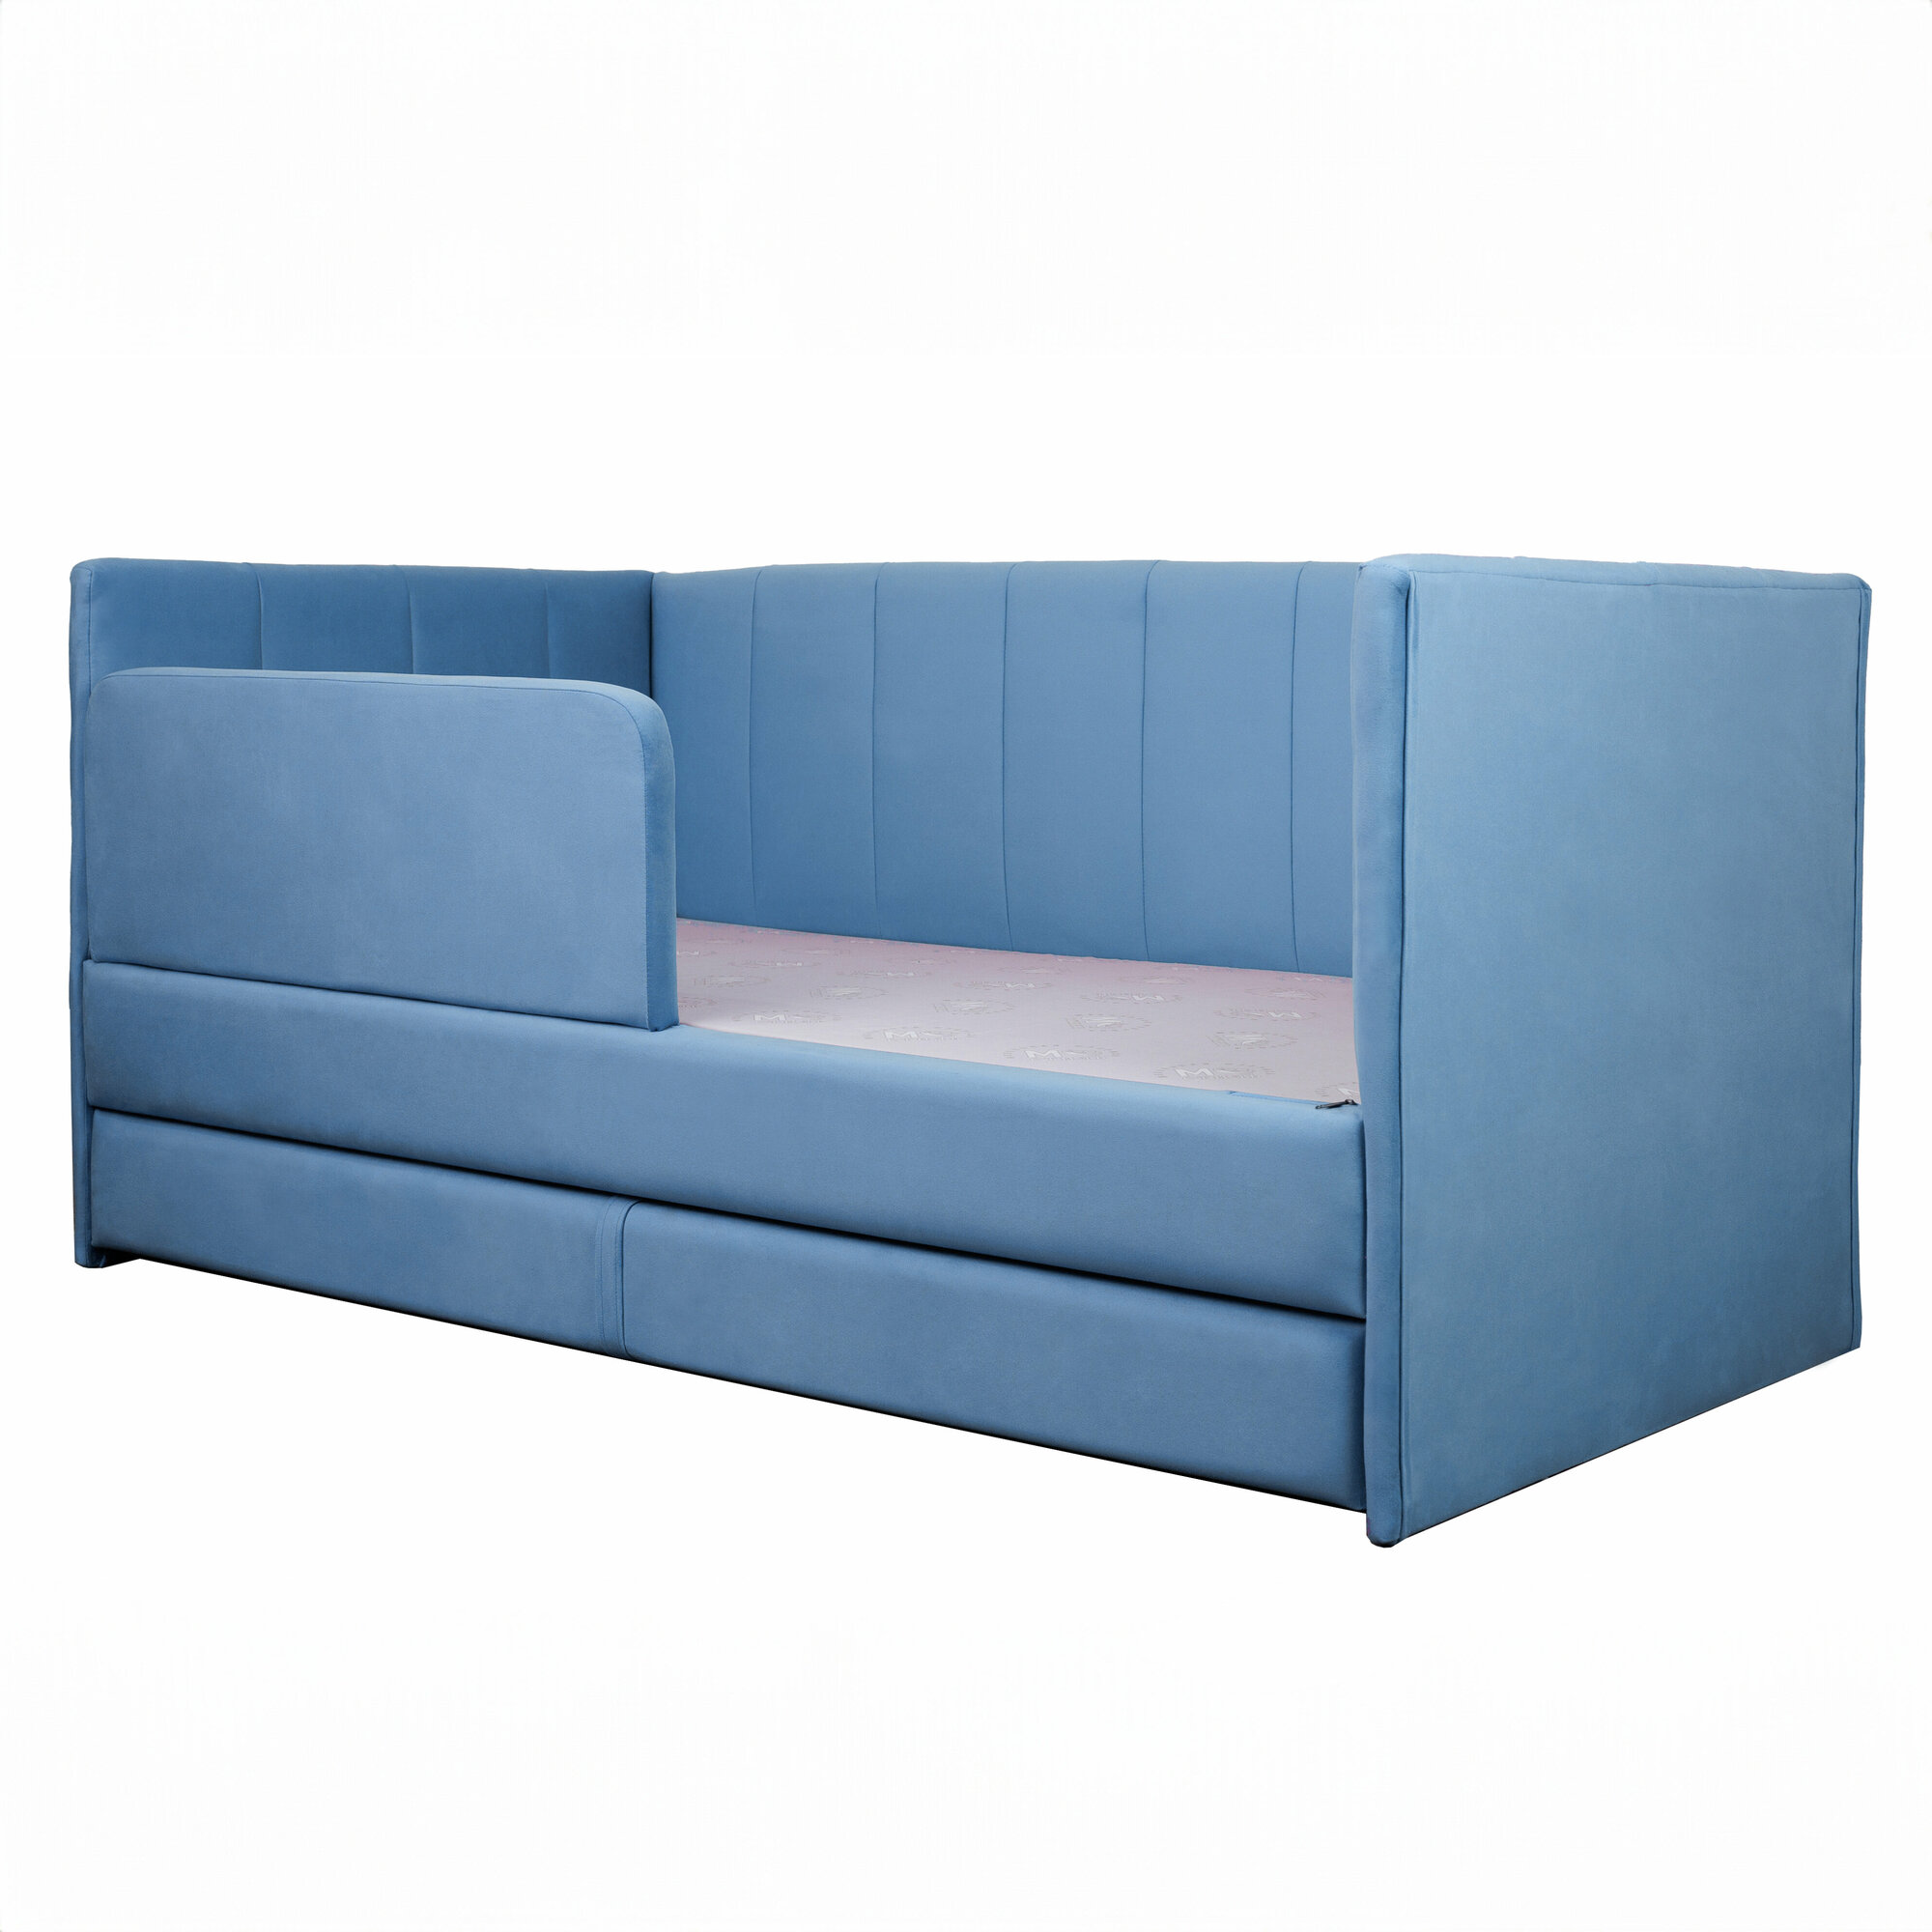 Кровать-диван Хагги 200*90 голубая с защитным бортиком, ящиком для хранения